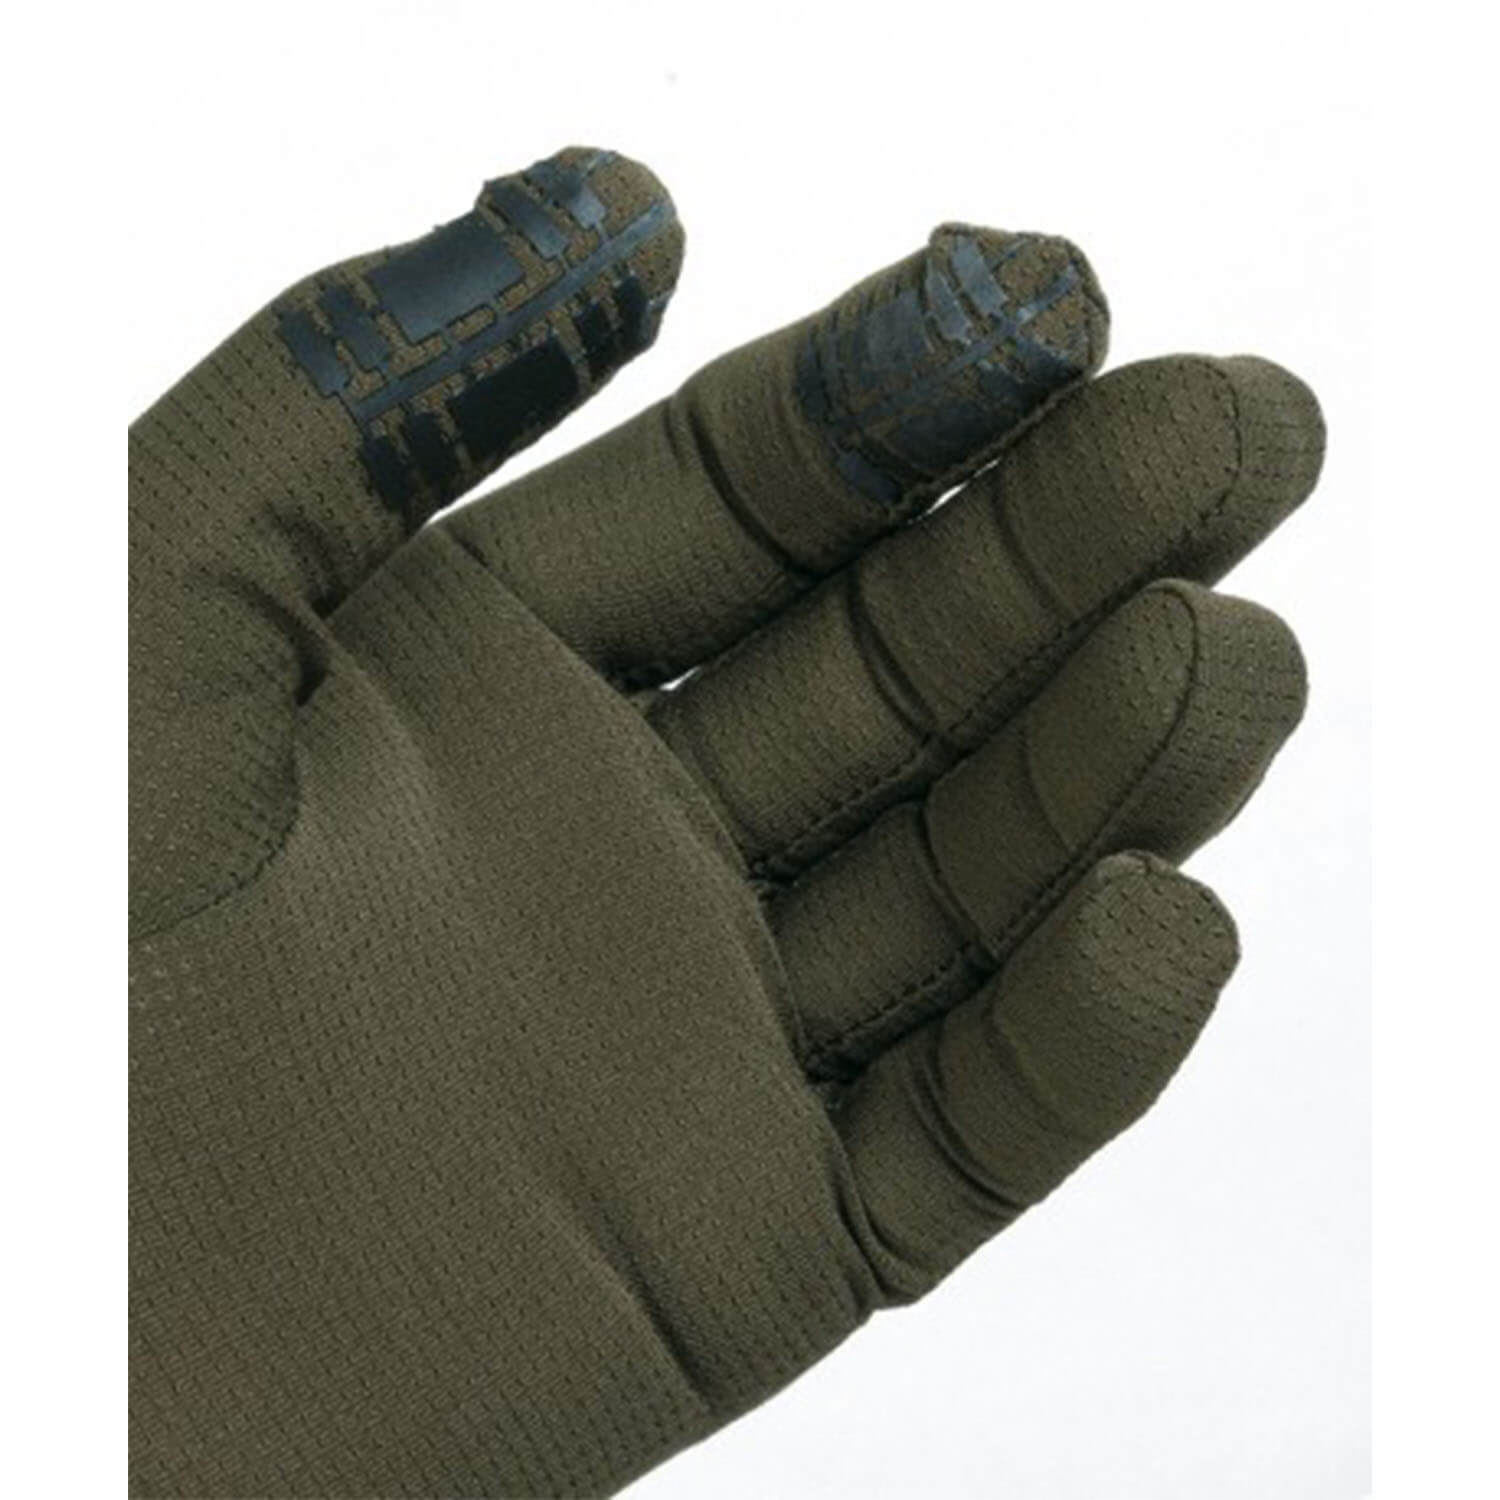  Hart Handschoenen Ural-GC overtrek Ultralight (Groen)